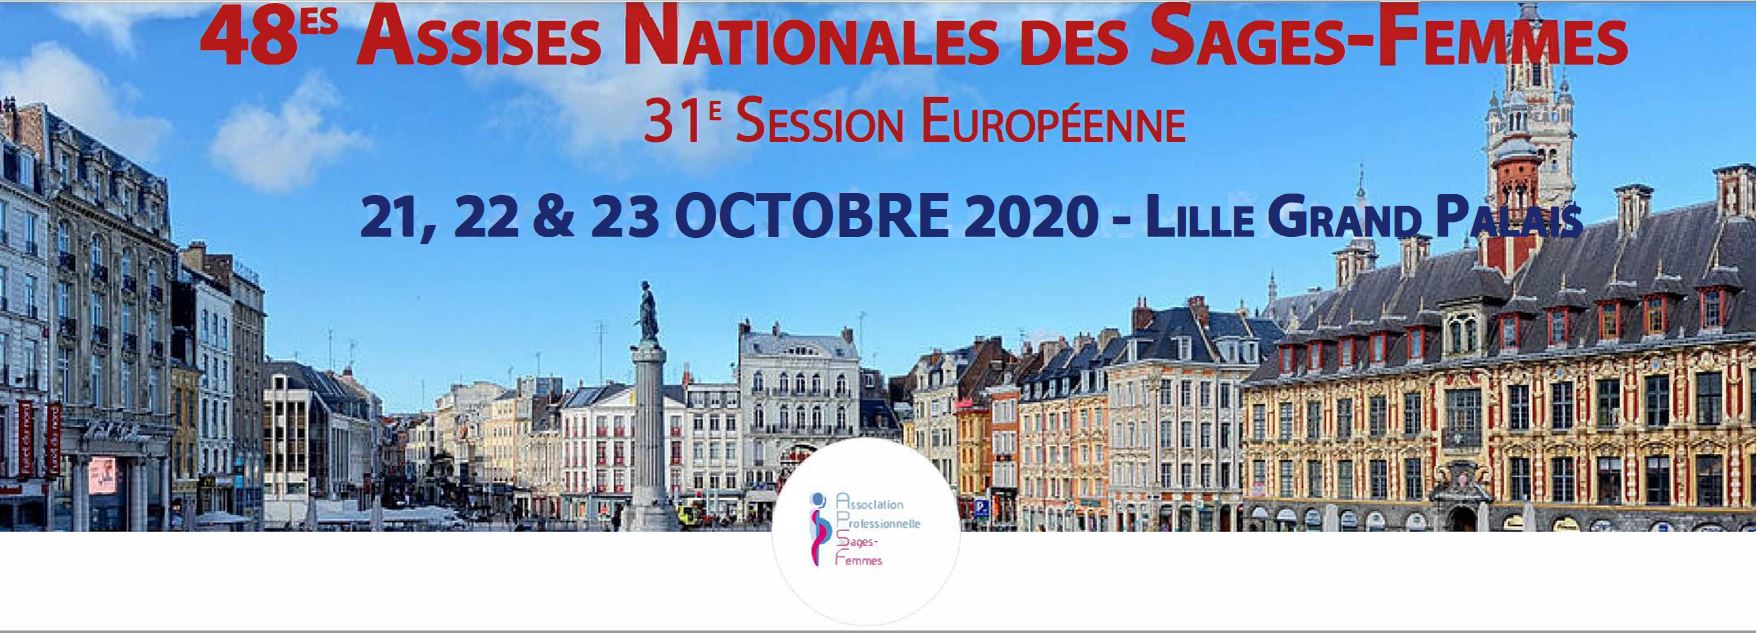 Différé des conférences plénières Assises Nationales des Sages Femmes Lille 2020